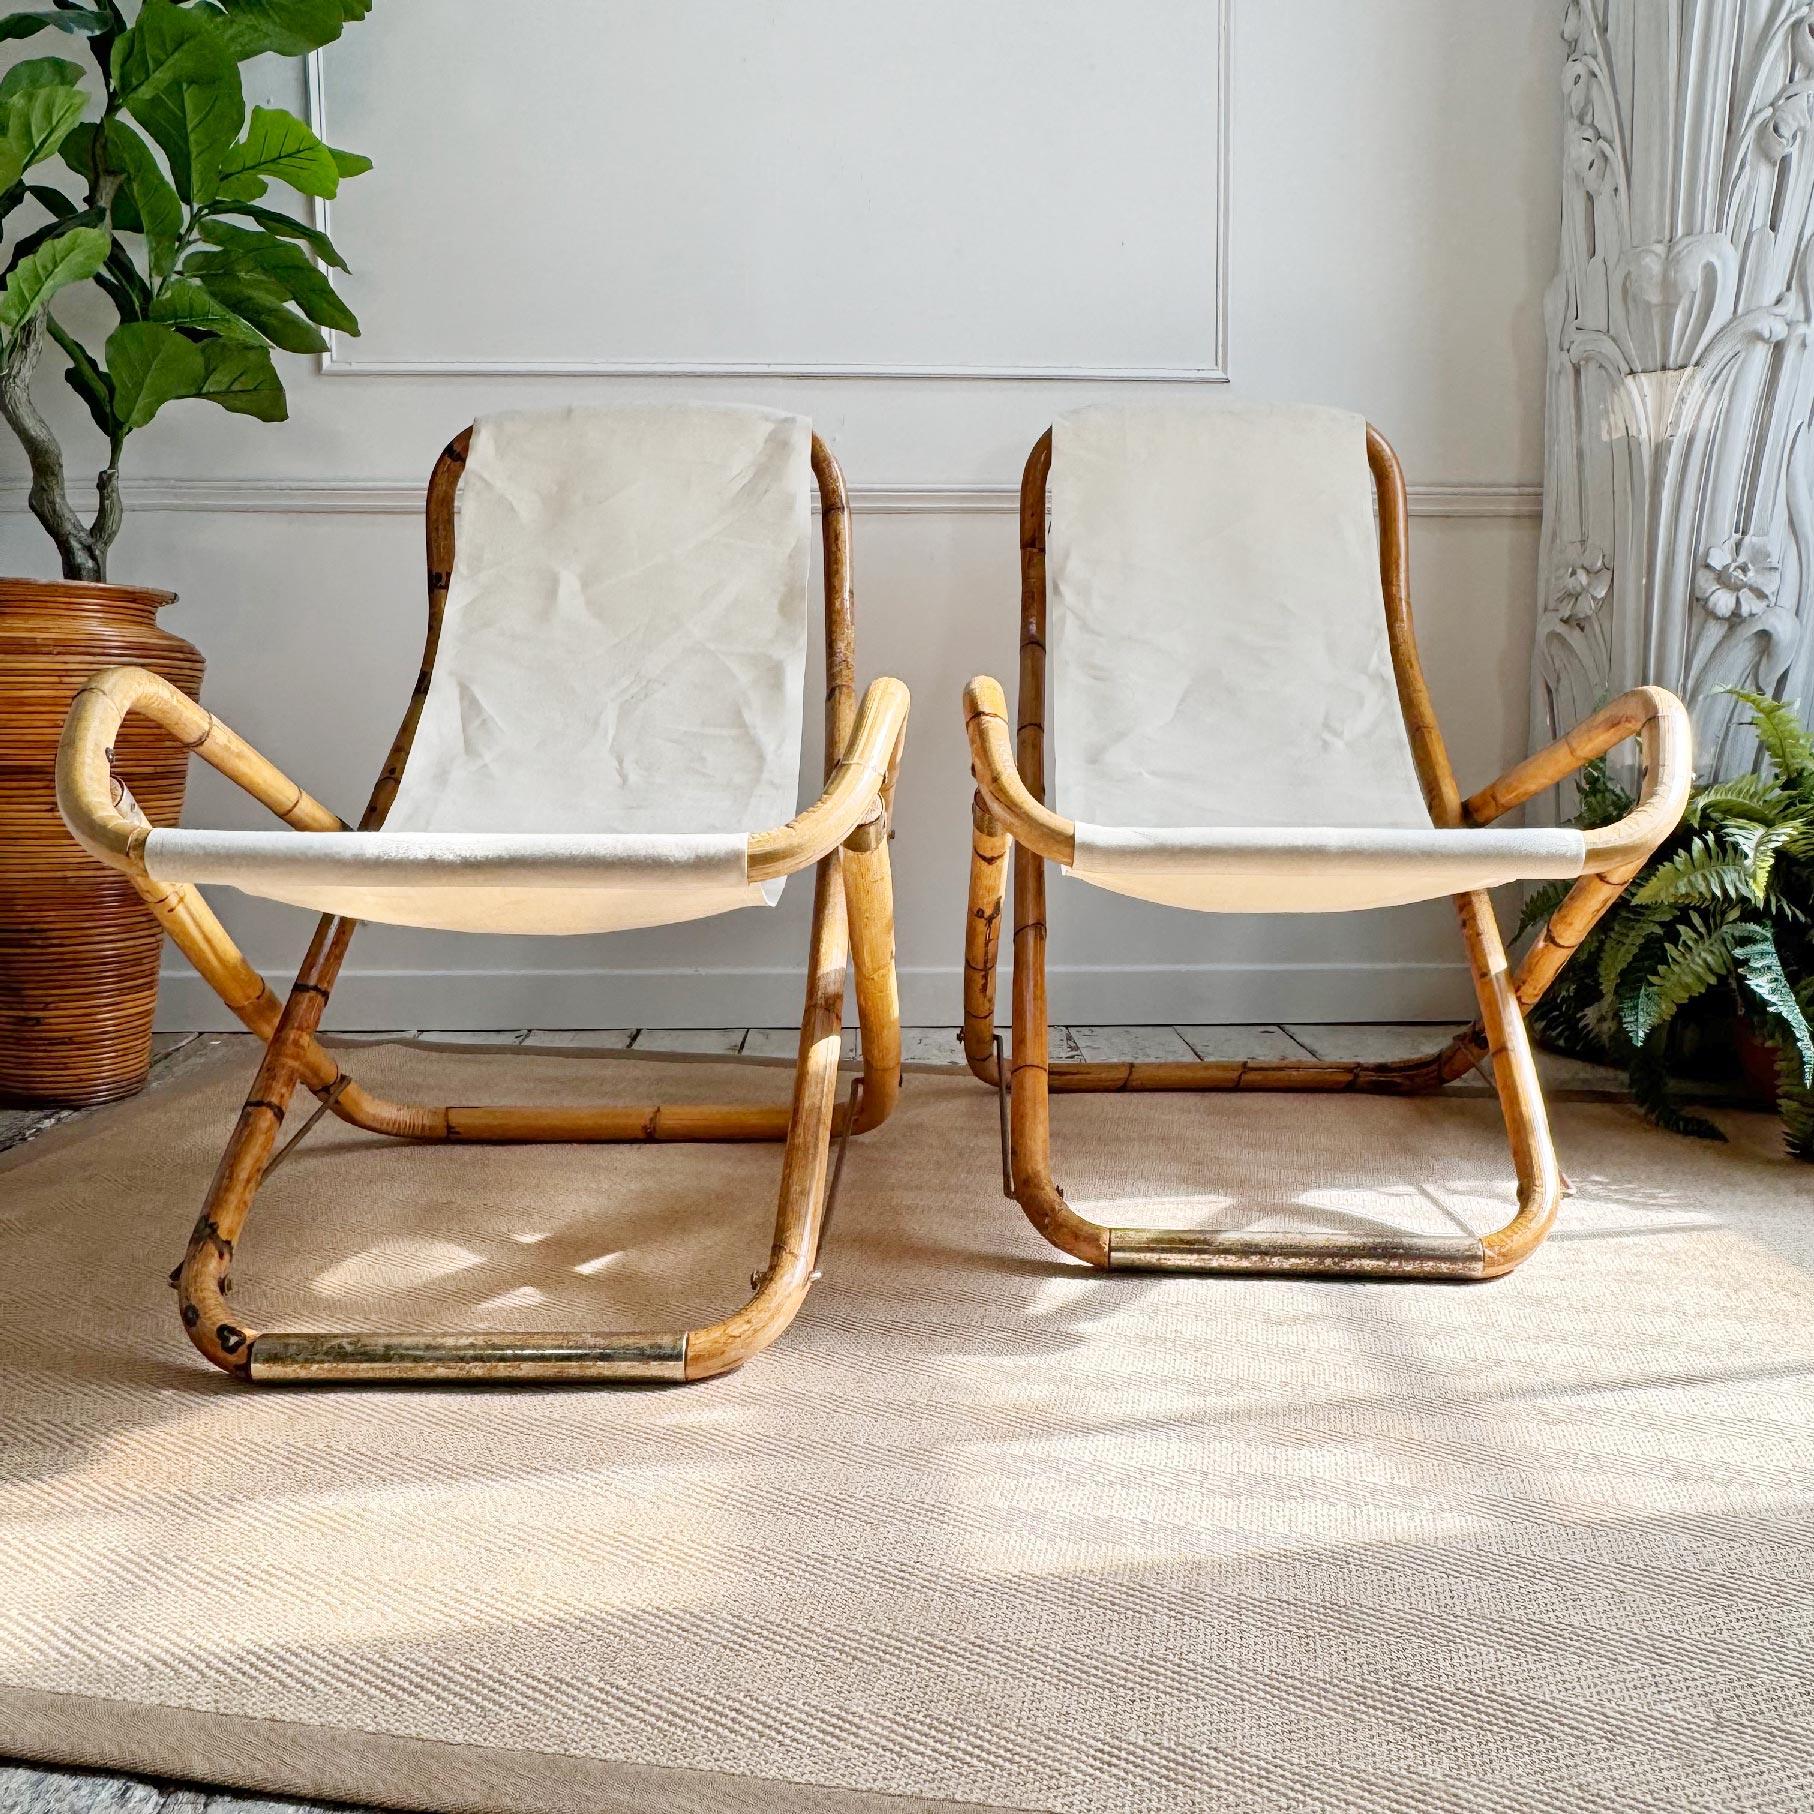 Ein außergewöhnliches Paar italienischer Liegestühle aus den 1960er Jahren, handgefertigt aus Bambus, mit vermessingten Fußstützen und Endkappen, Sitze aus weißem Stoff. Diese sind schöne seltene Überlebende und in sehr gutem Vintage-Zustand, die